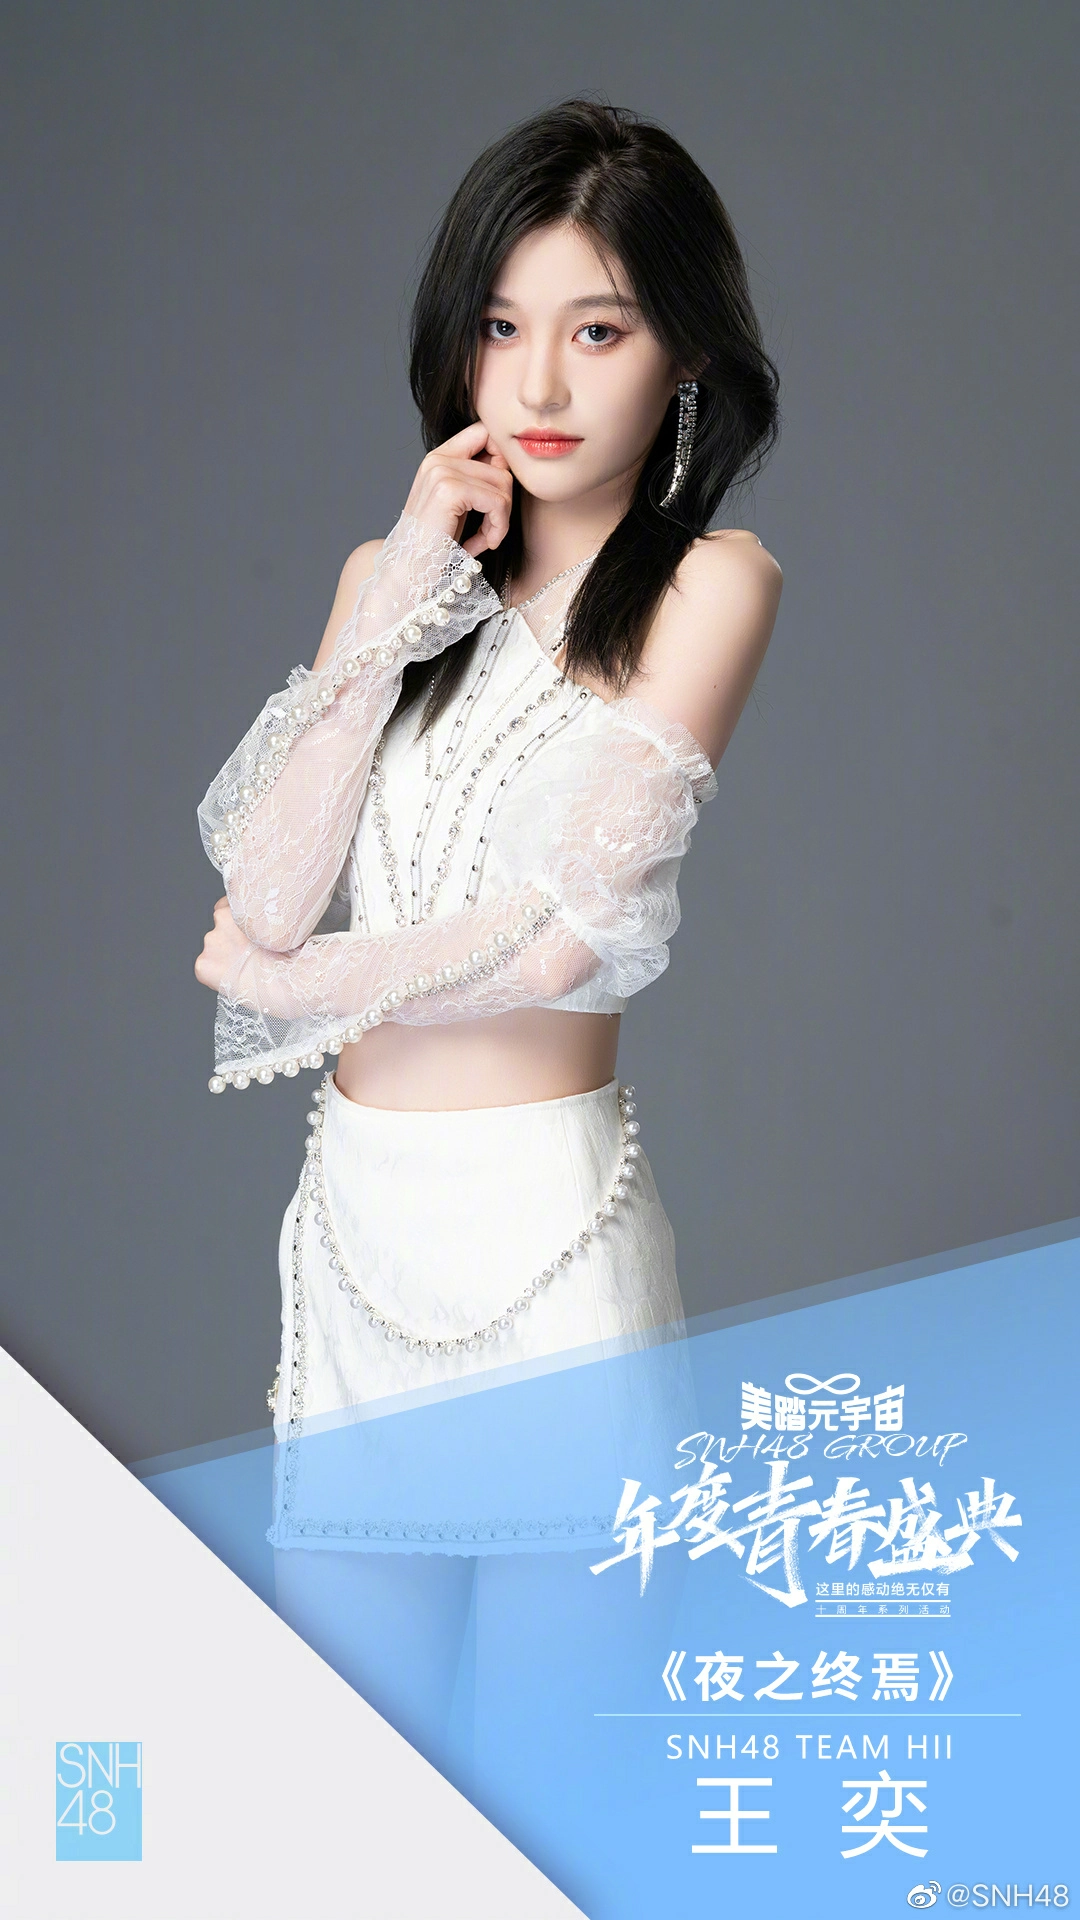 SNH48年度总决选排名公布 沈梦瑶第一段艺璇第二袁一琦第三,SNH48-王奕